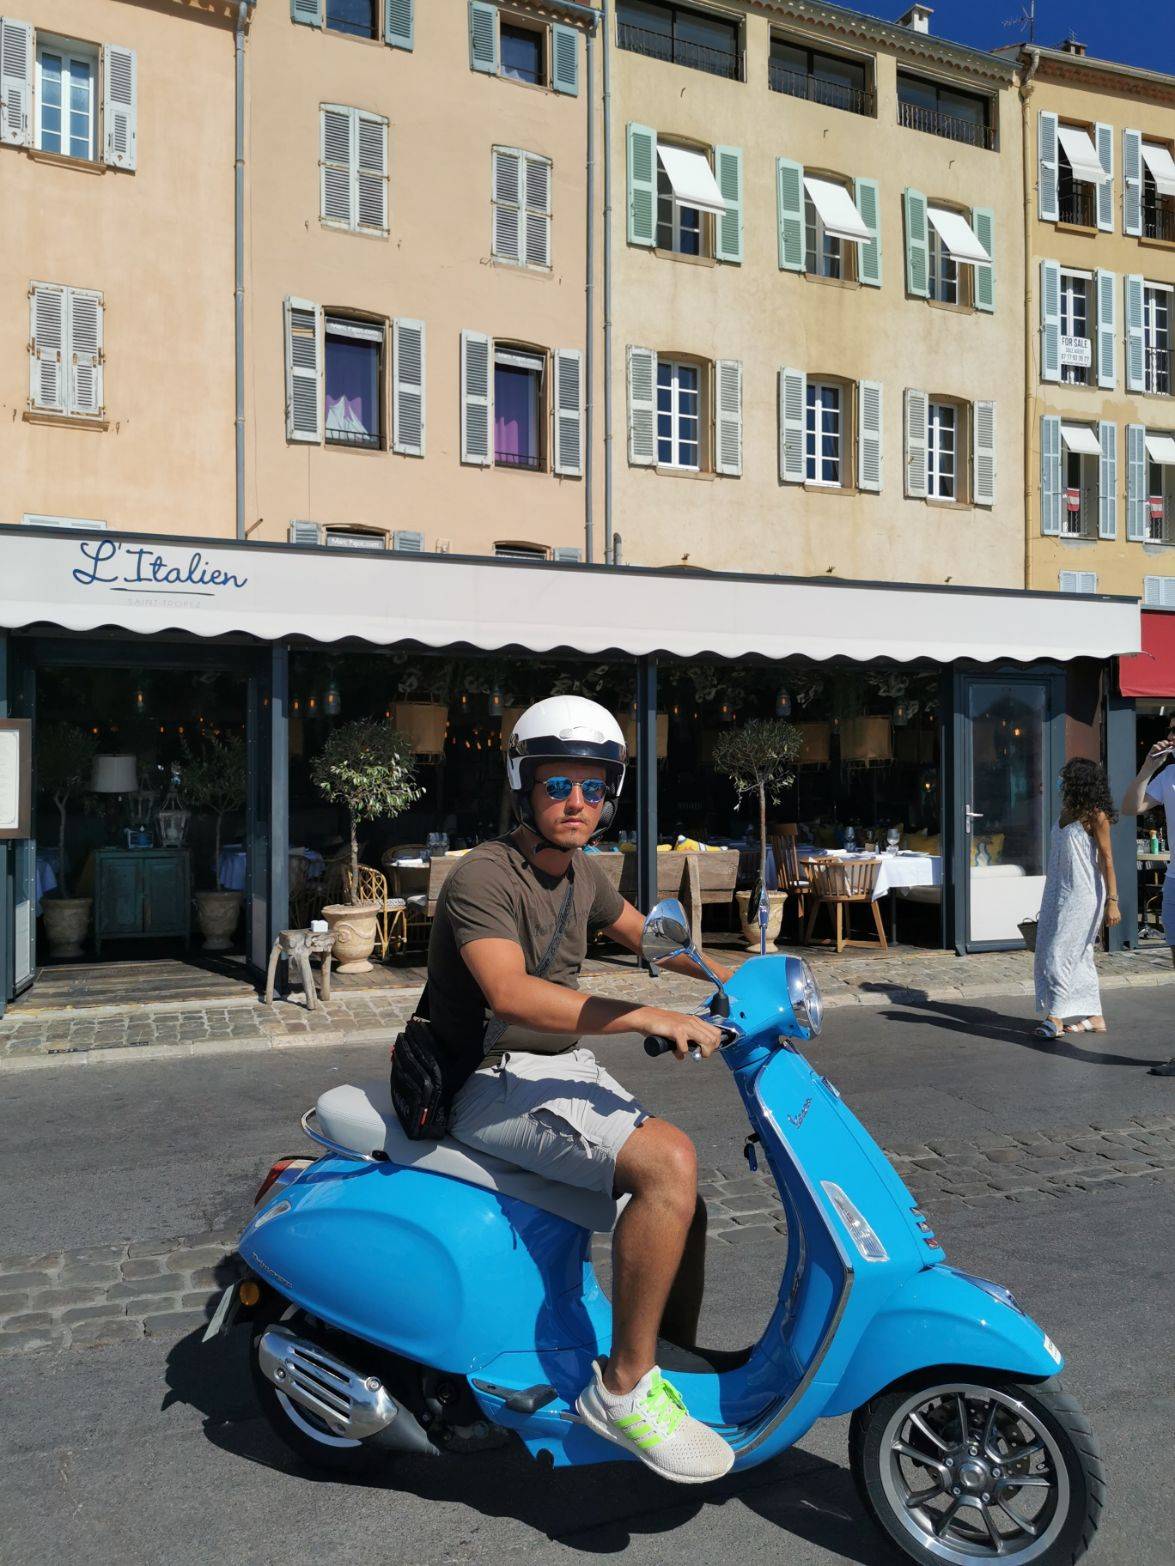 Ein Mann mit Sonnenbrille und Helm sitzt auf einem blauen Roller in einer sonnigen Straße mit farbenfrohen Gebäuden und Straßencafés und träumt von seinem bevorstehenden Segelurlaub.